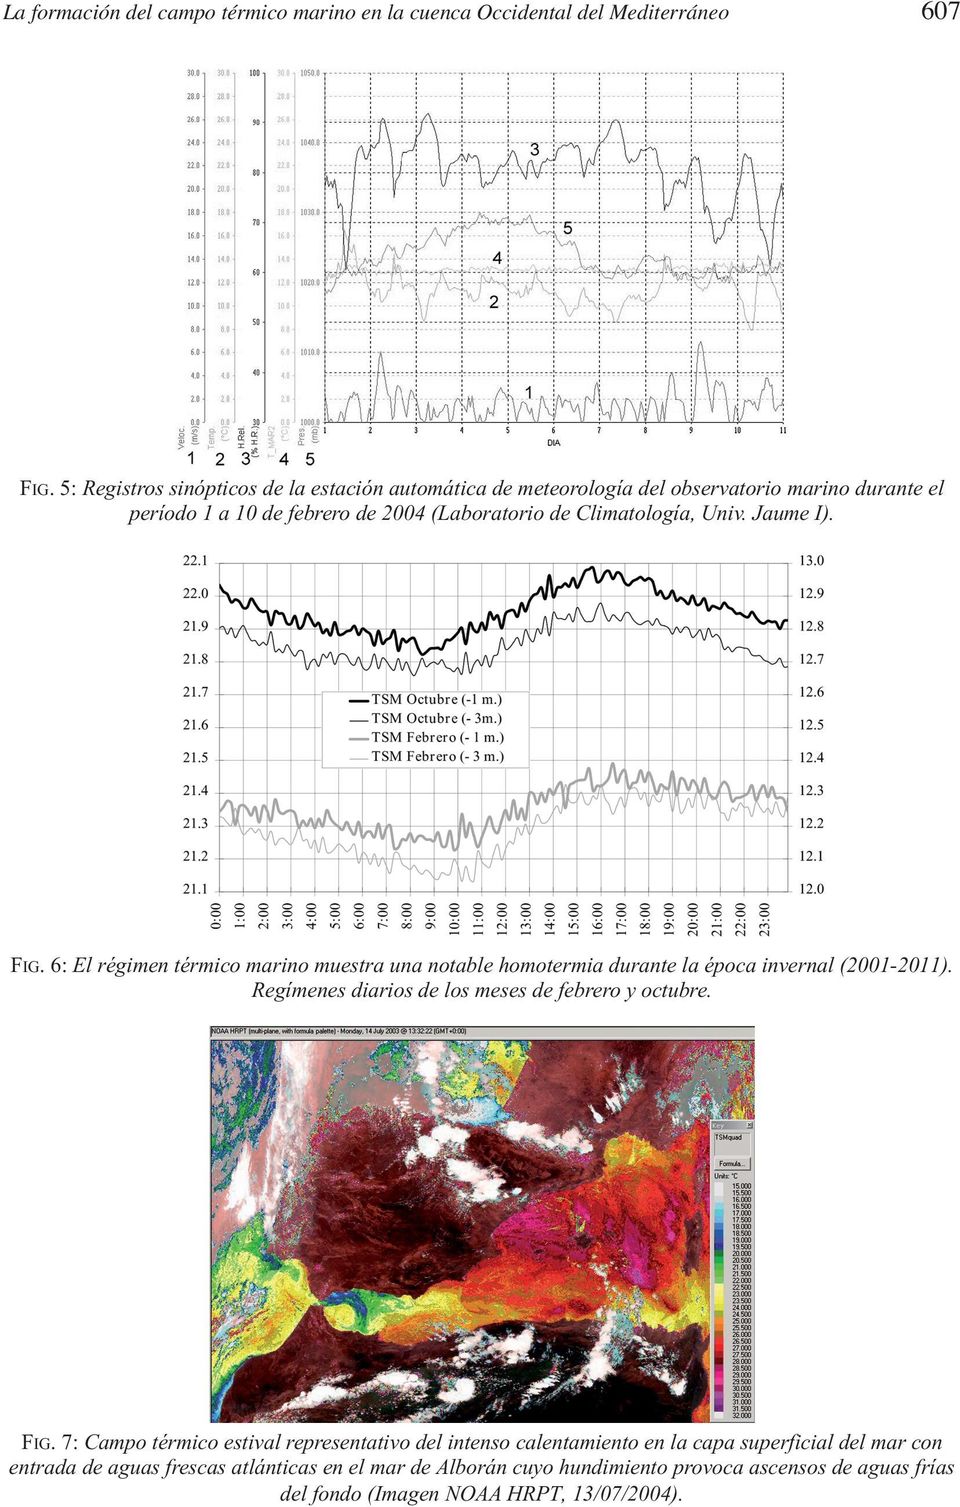 Jaume I). FIG. 6: El régimen térmico marino muestra una notable homotermia durante la época invernal (2001-2011). Regímenes diarios de los meses de febrero y octubre.